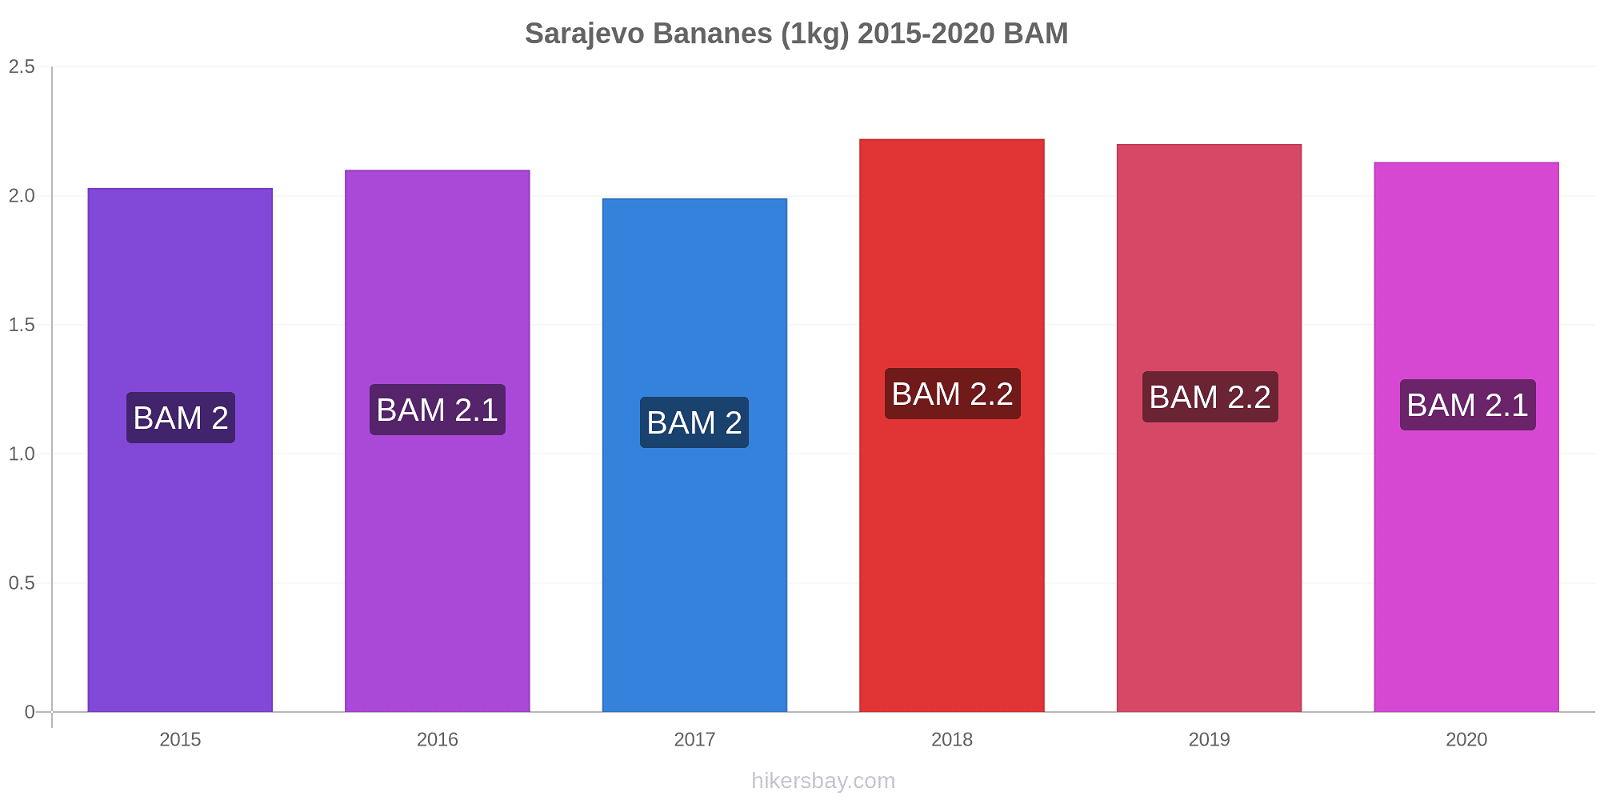 Sarajevo changements de prix Bananes (1kg) hikersbay.com